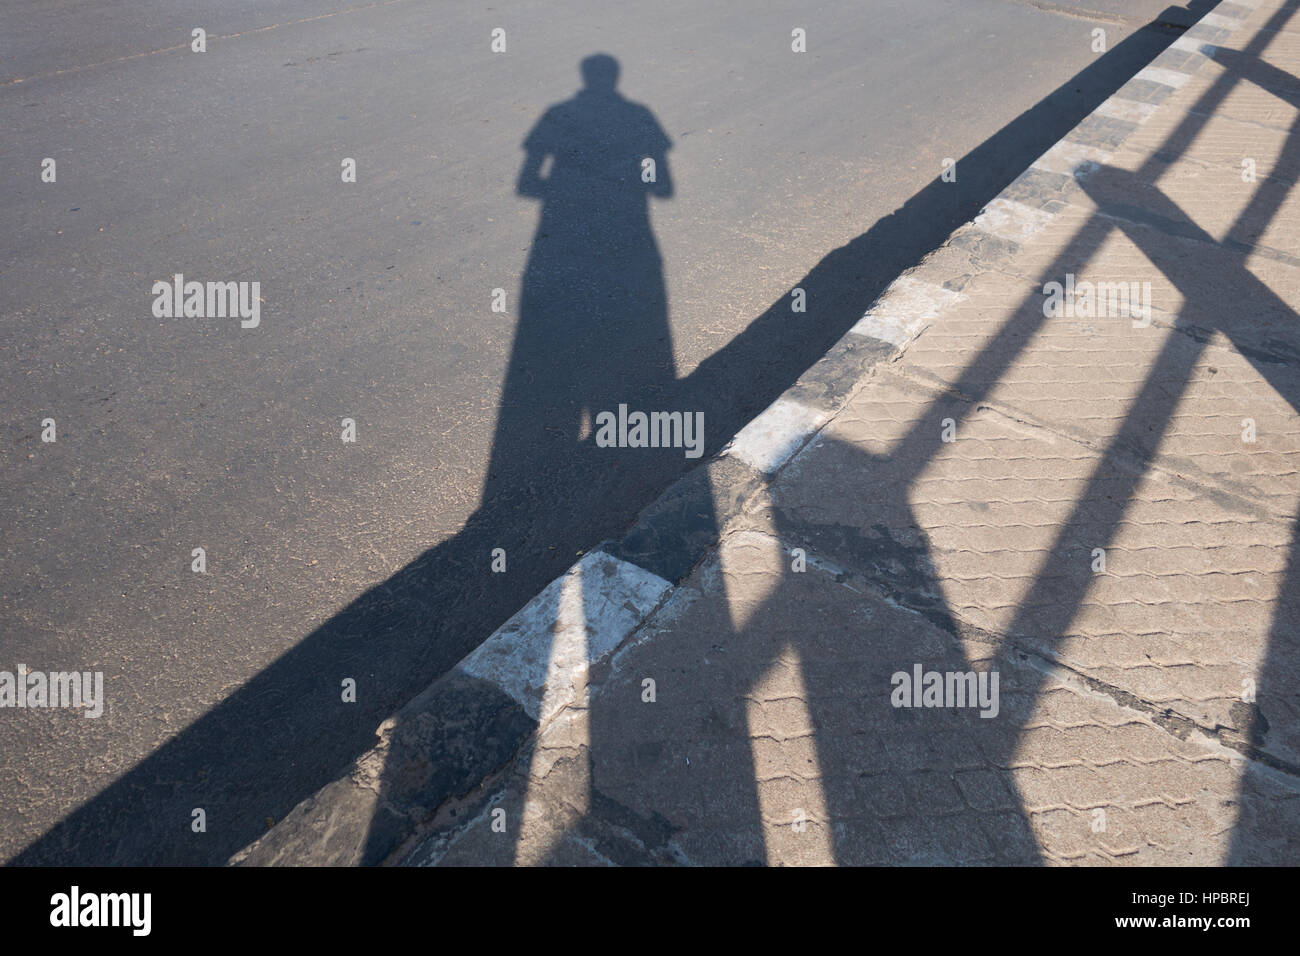 L'homme indien de prendre une photo de son ombre debout sur un trottoir à côté de rambarde à Hyderabad, Inde Banque D'Images